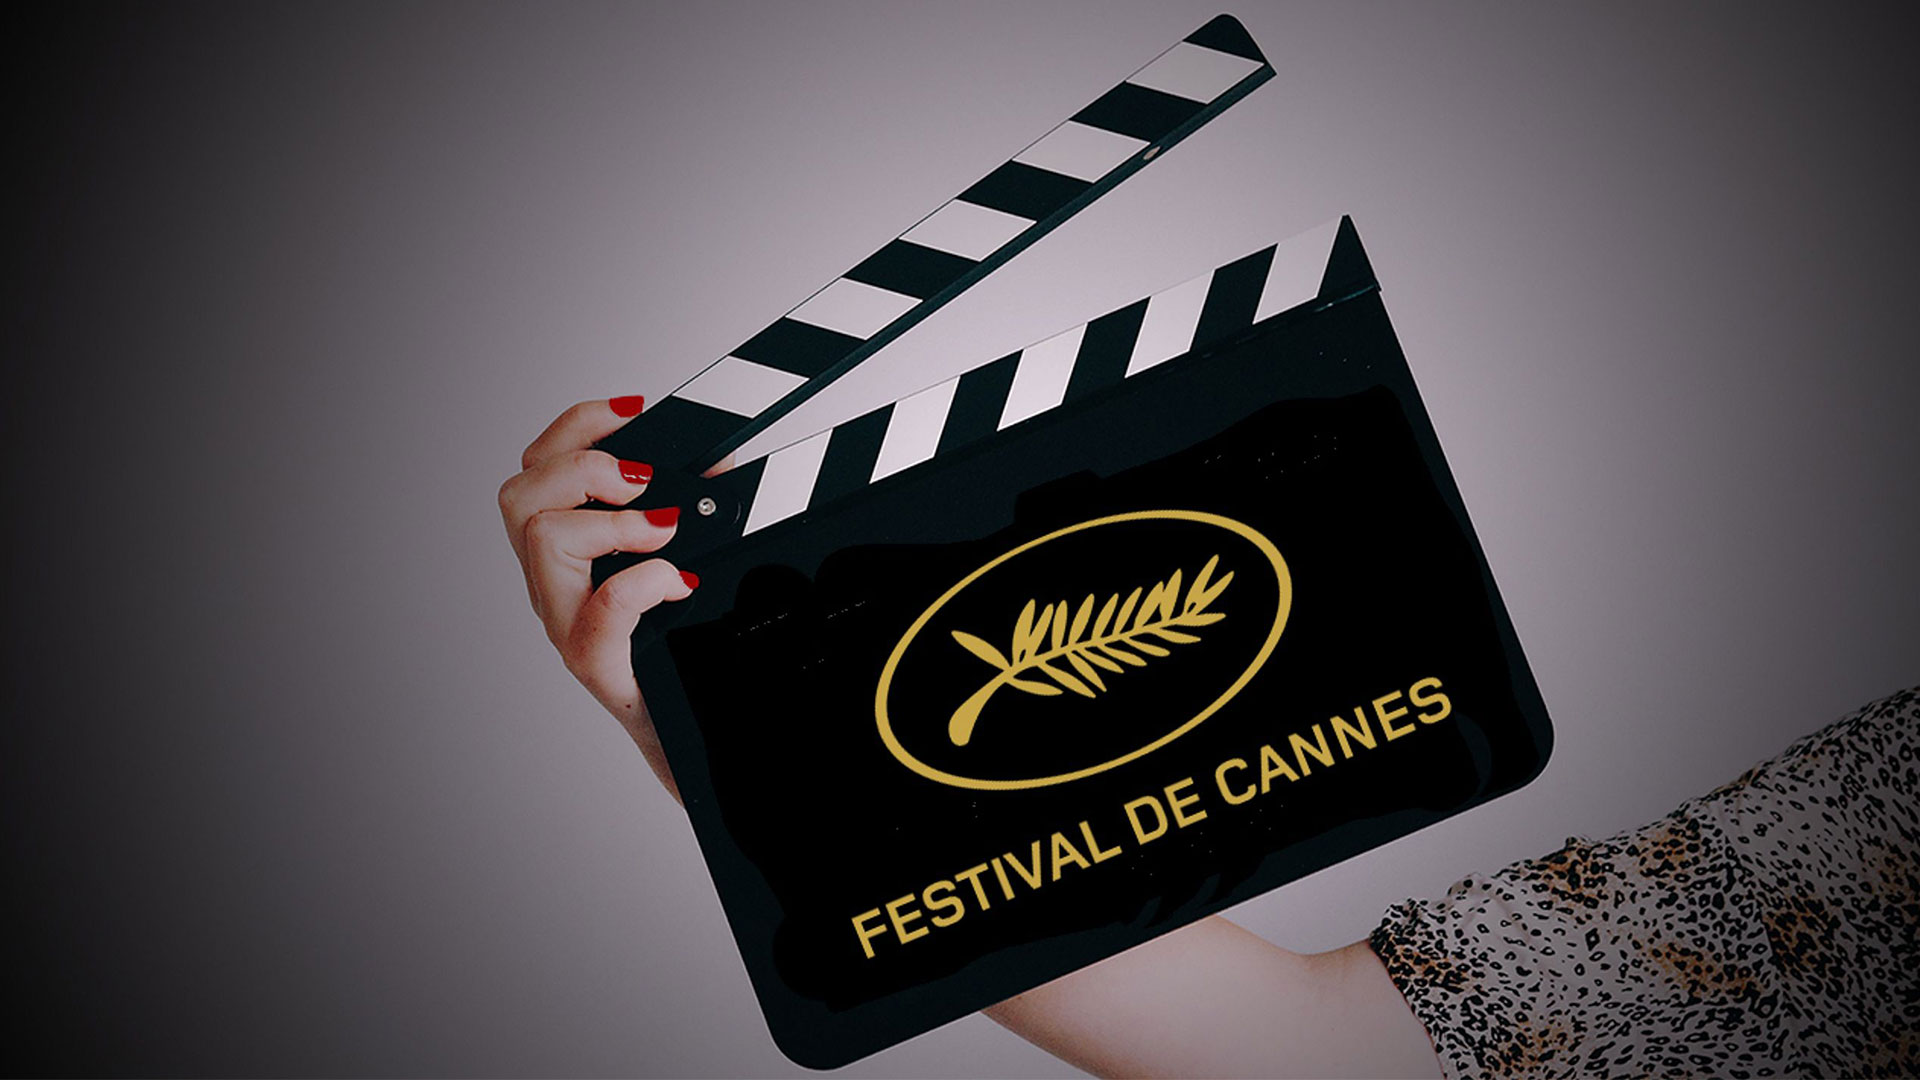 CANNES FILM FESTIVAL ANNOUNCES 2022 JURY LINEUP